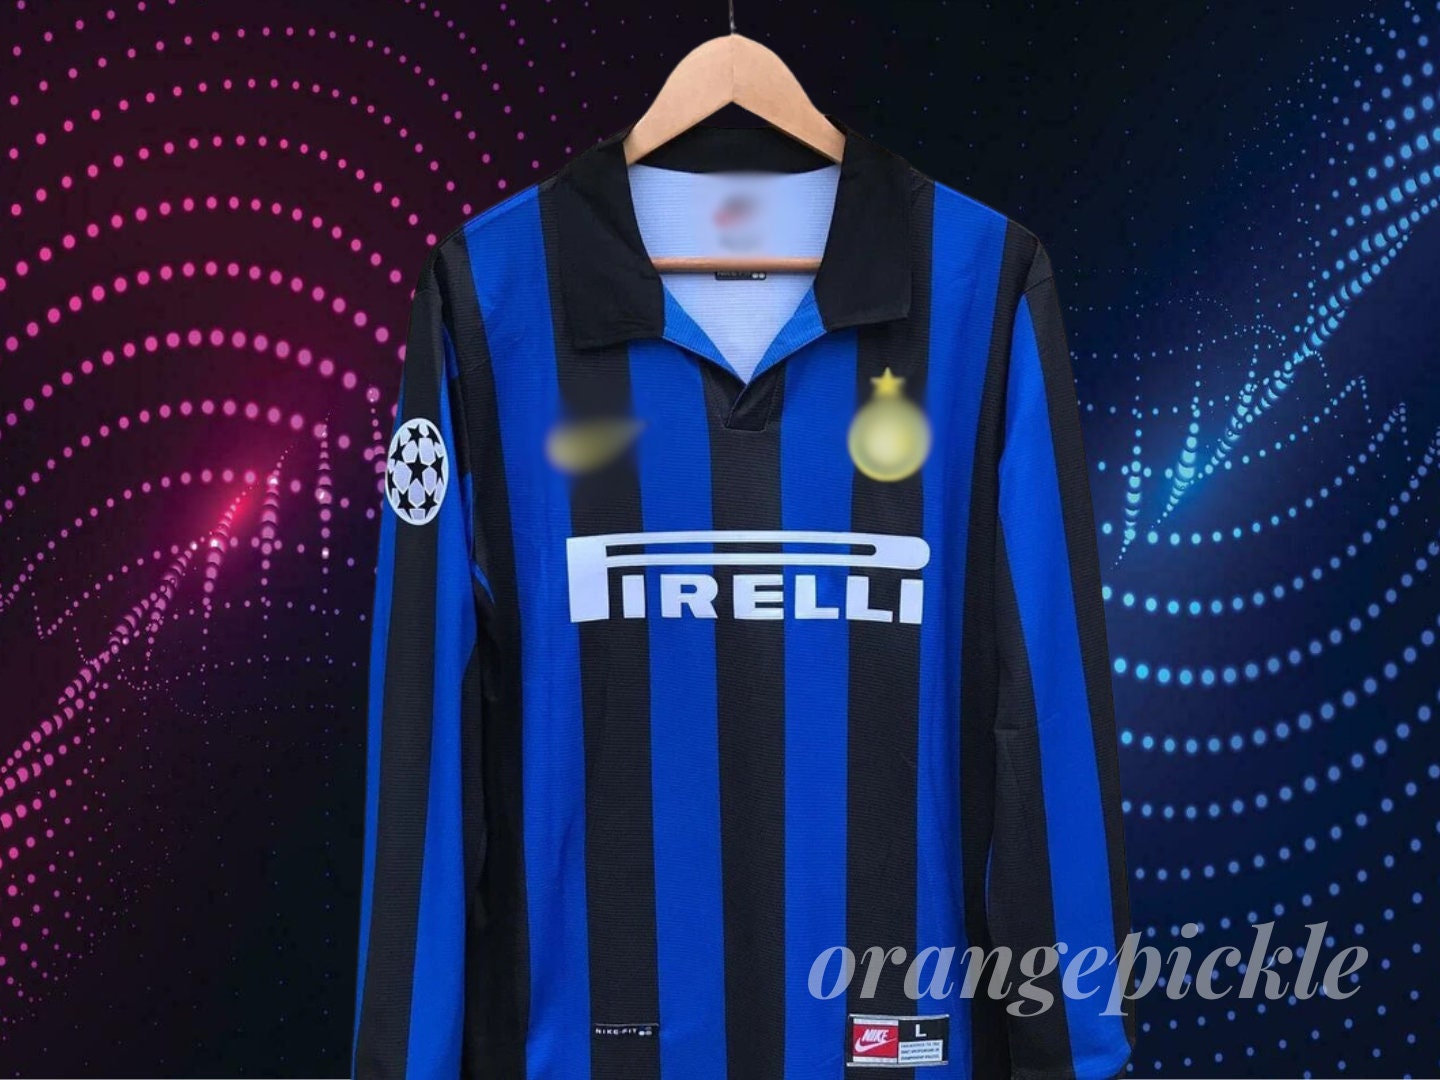 Camiseta réplica oficial Milan de Rafael LEAO 10, modelo Home